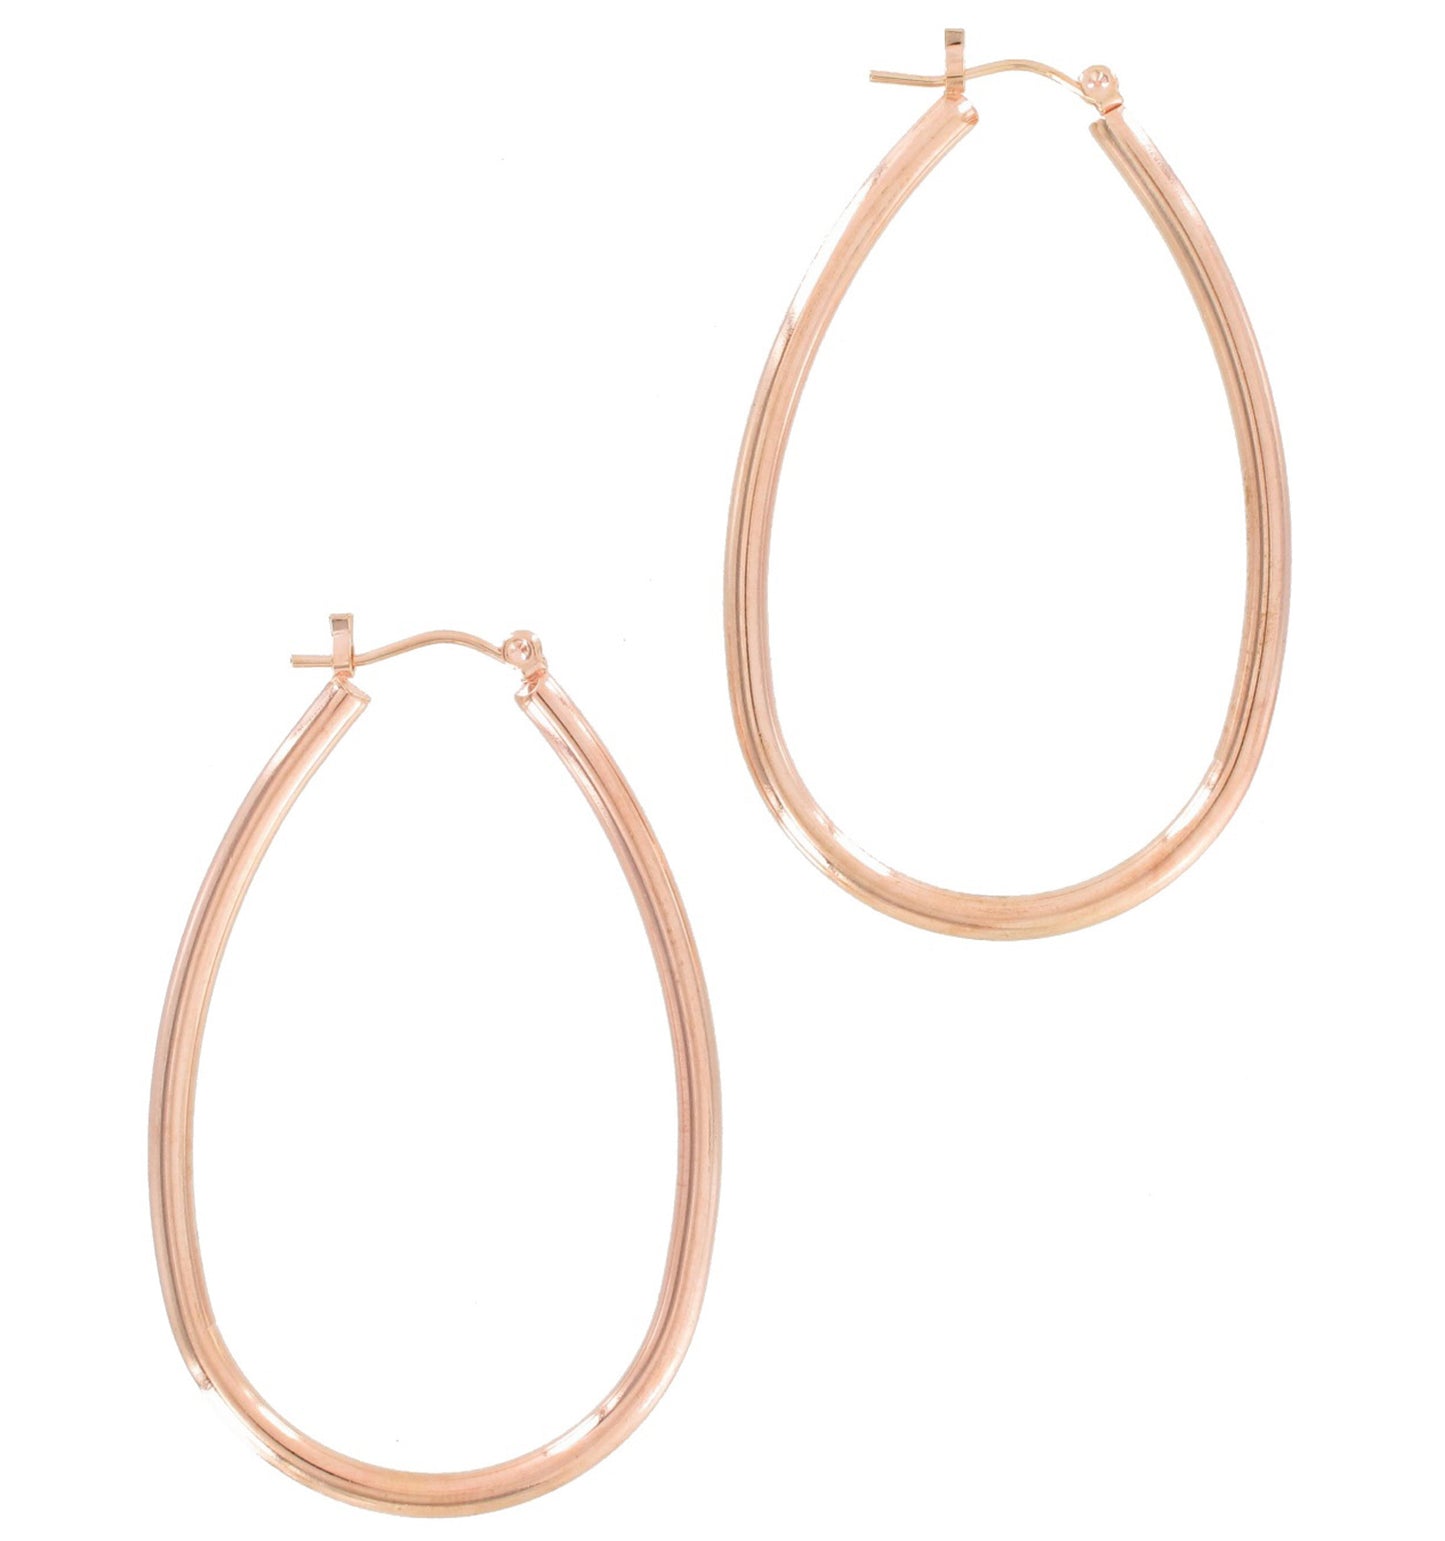 Ky & Co Rose Gold Tone Pierced Earrings Hoop Loop Large Made In USA 2 1/4"